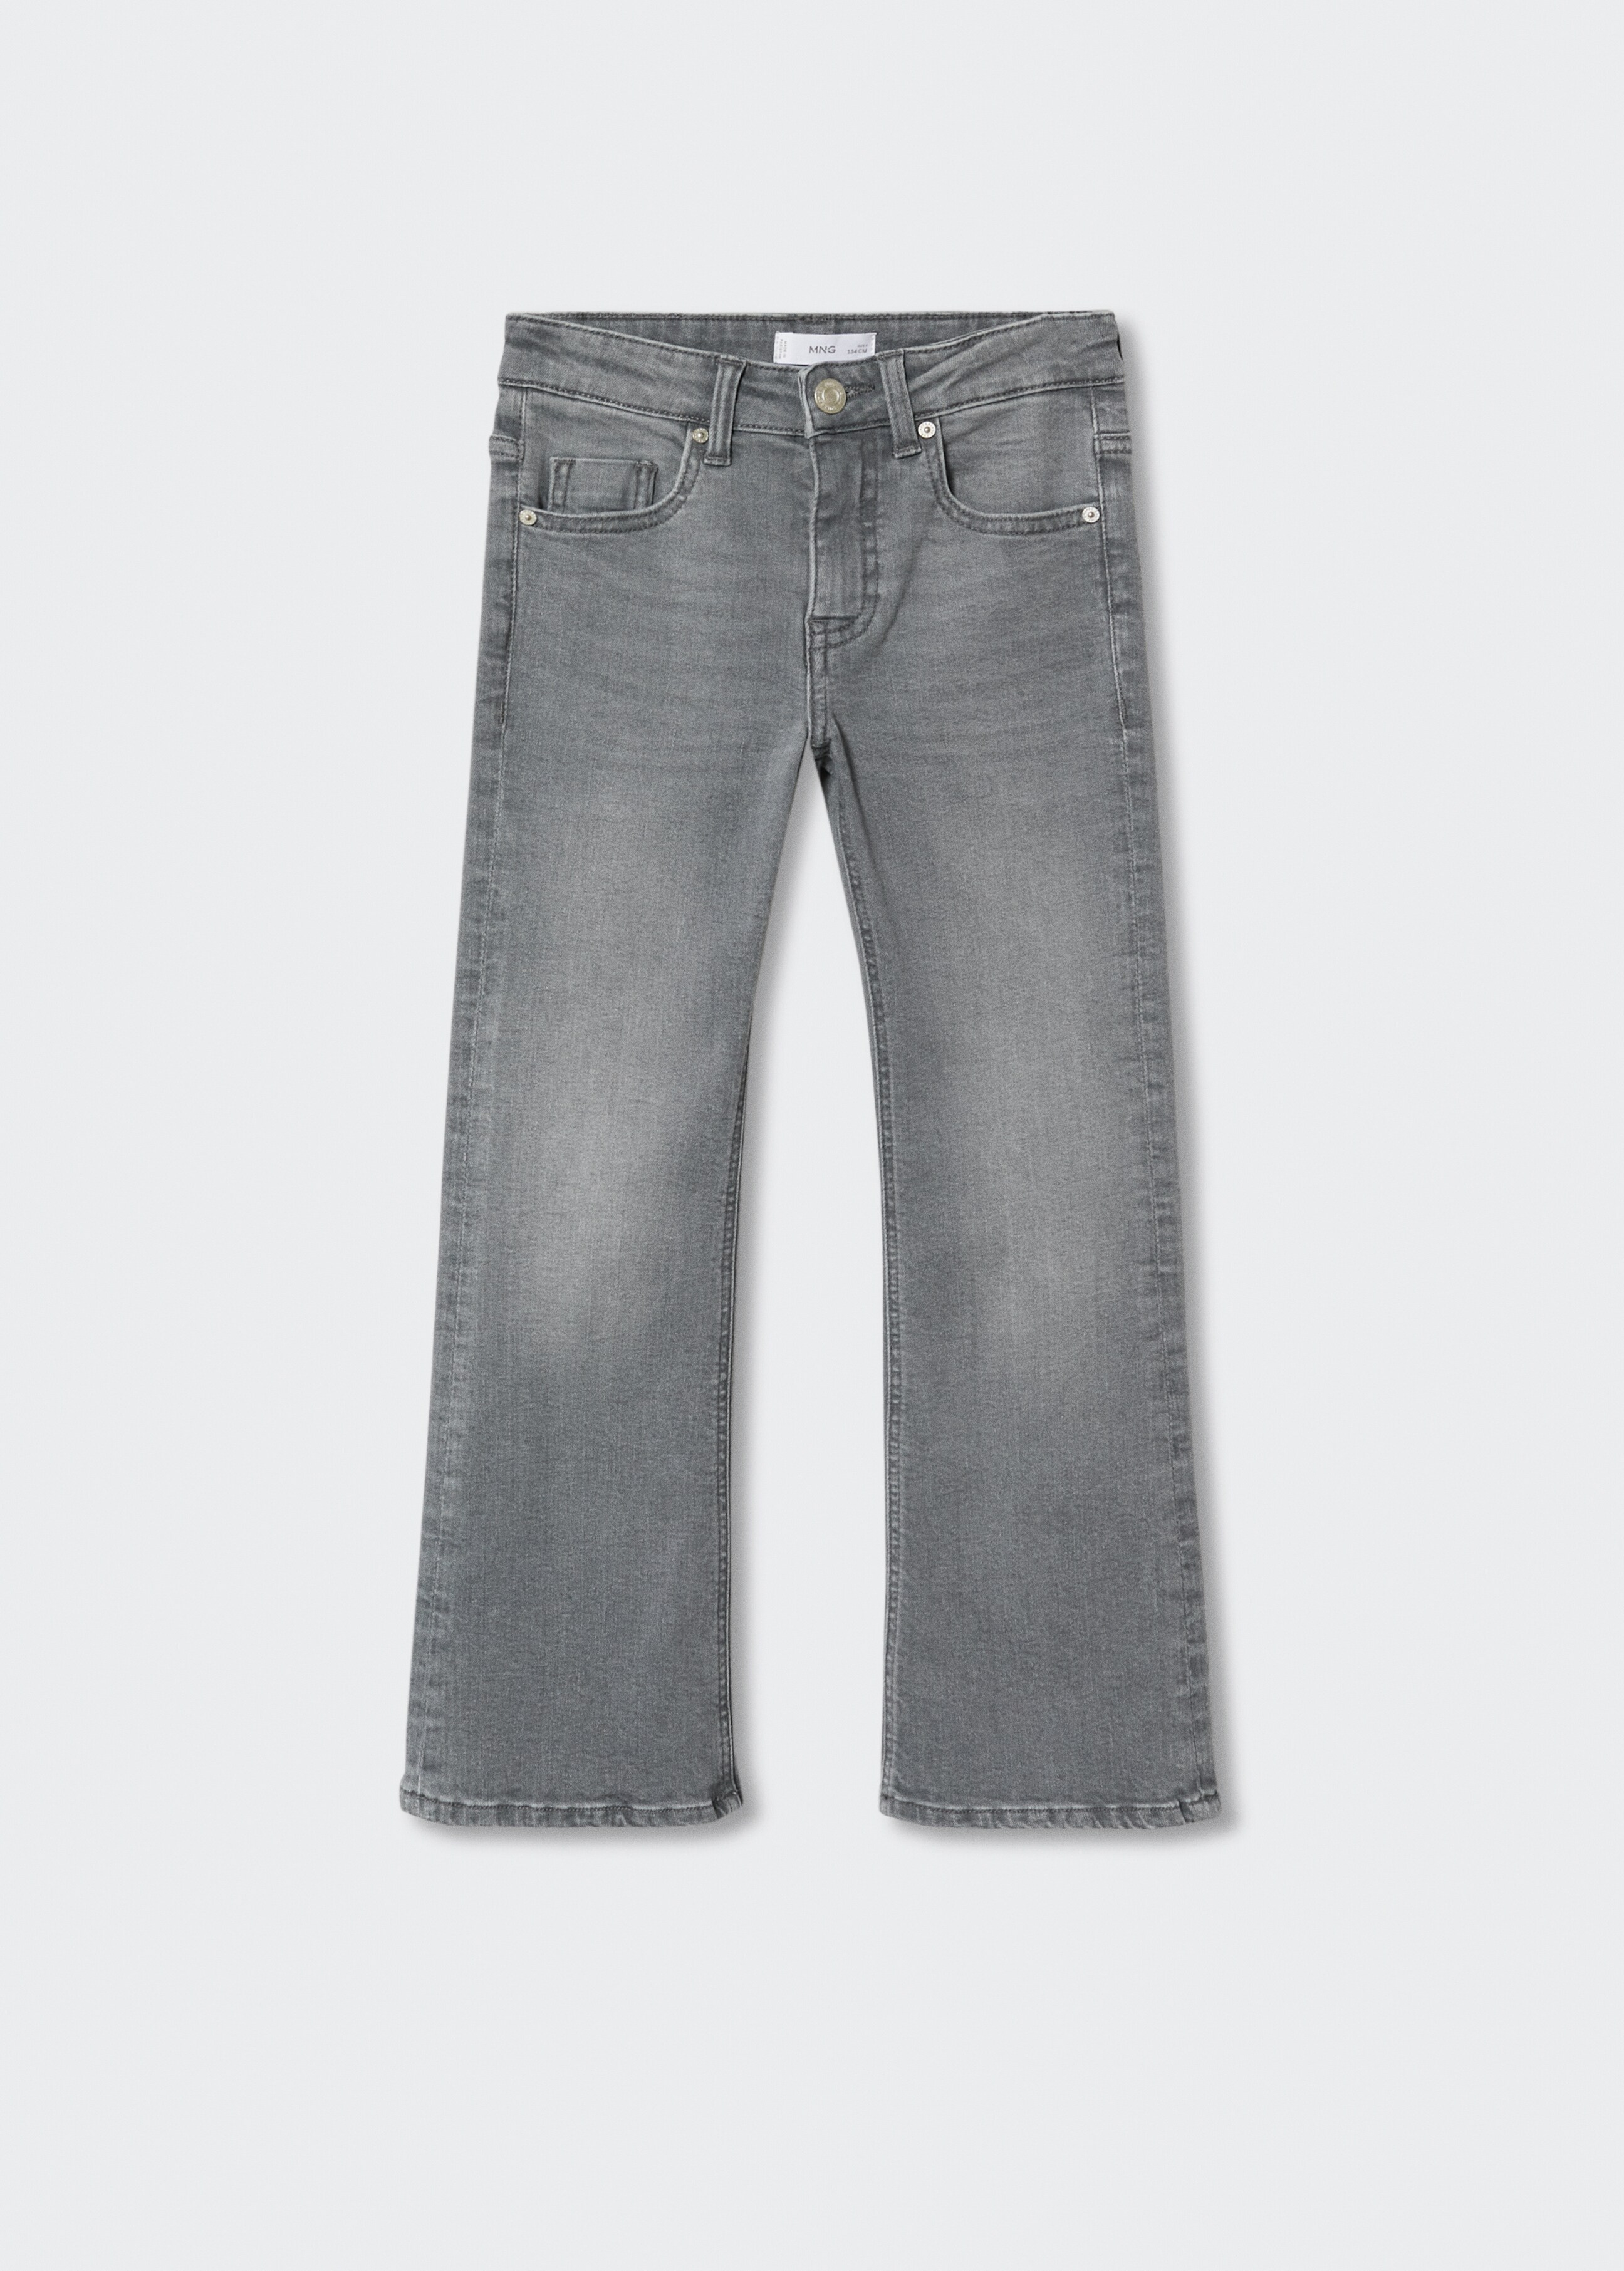 Jeans flare - Artículo sin modelo